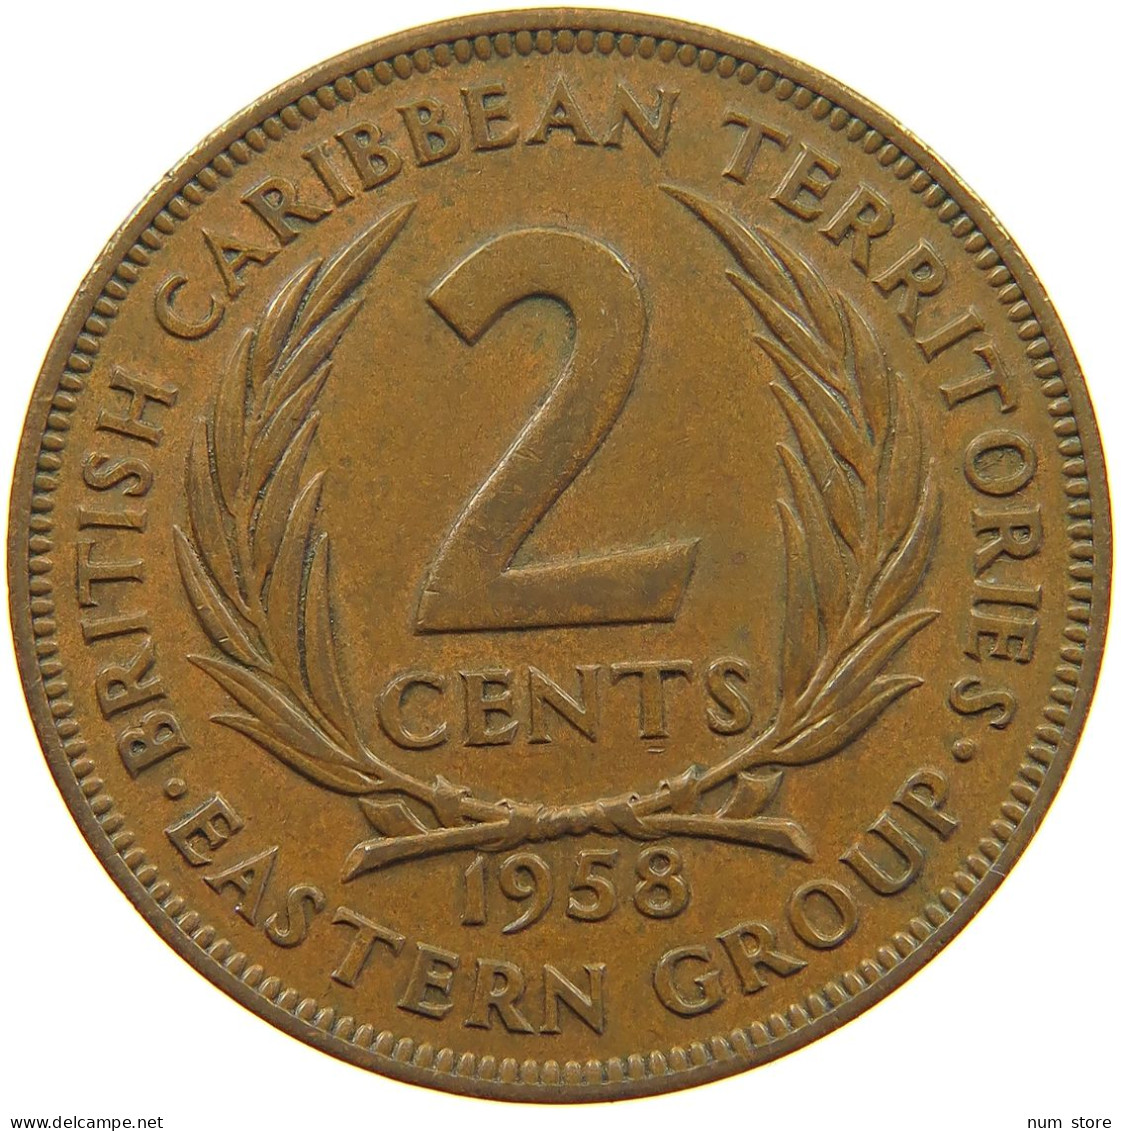 BRITISH CARIBBEAN TERRITORIES 2 CENTS 1958 Elizabeth II. (1952-2022) #c014 0453 - Caraibi Britannici (Territori)